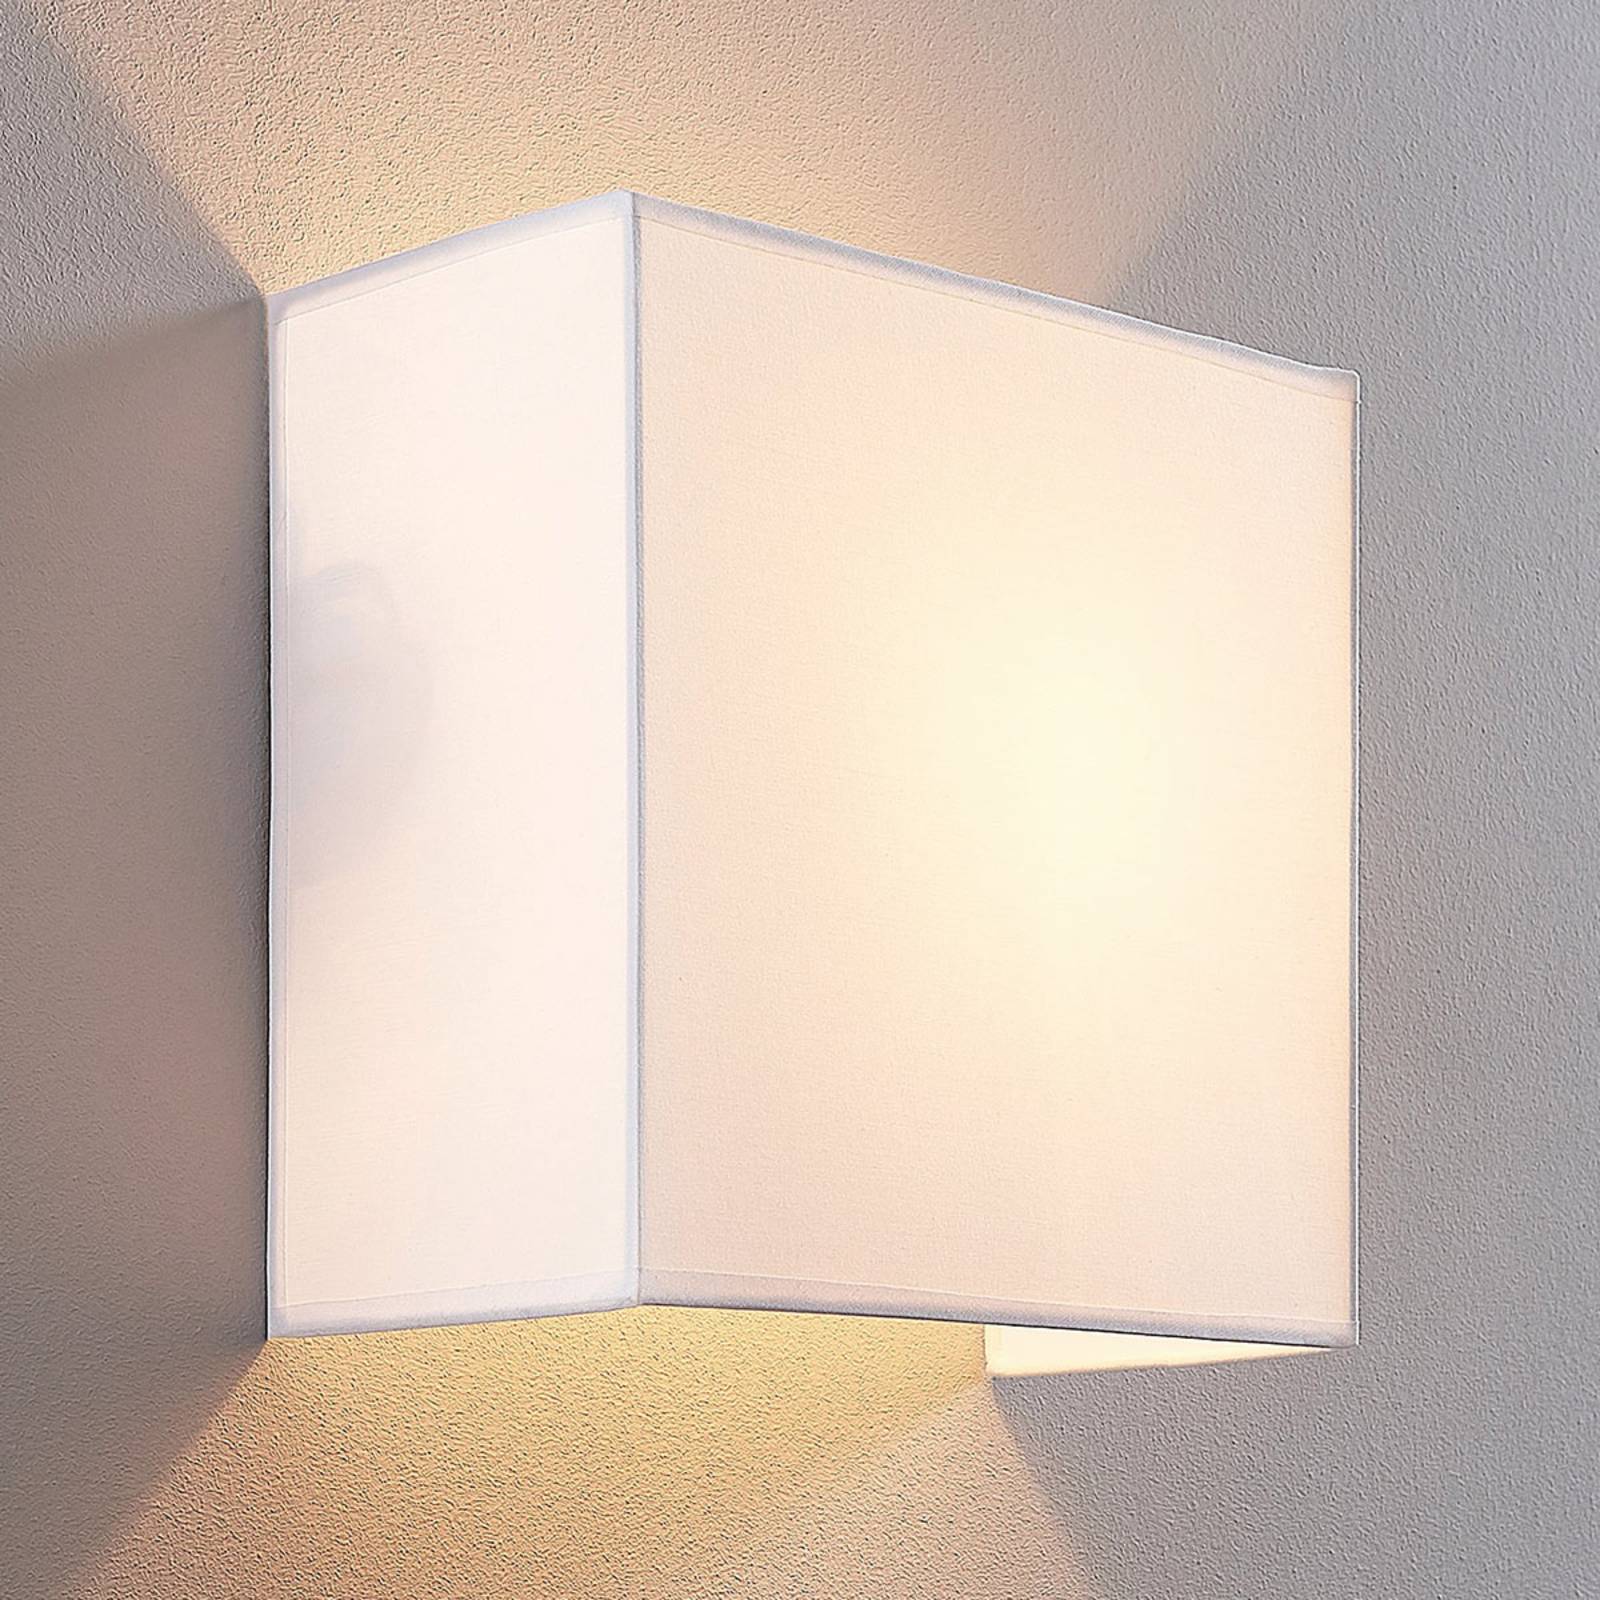 Stoffen wandlamp Adea, 25 cm, vierkant, wit